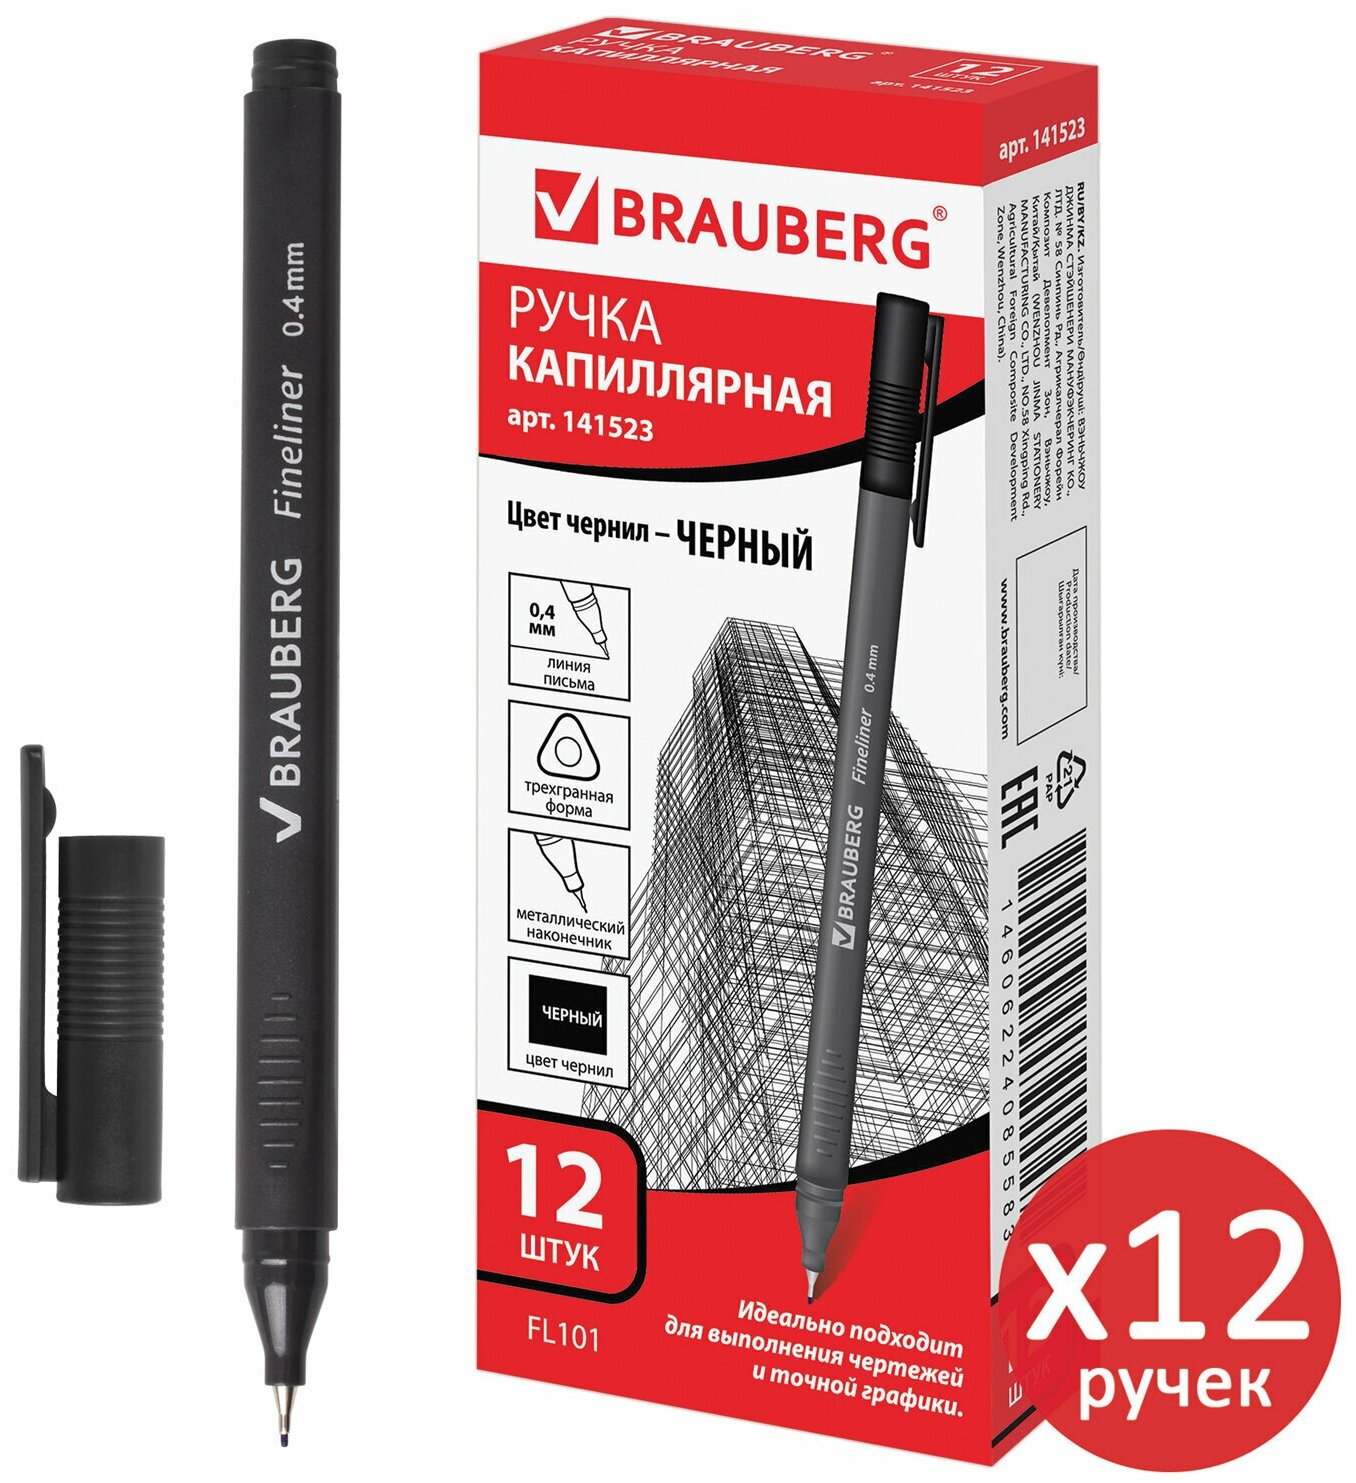 Линеры (капиллярные ручки) для письма и рисования, скетчинга Черные Brauberg Carbon, Выгодный Комплект 12 штук, трехгранная, 0,4мм, 880737